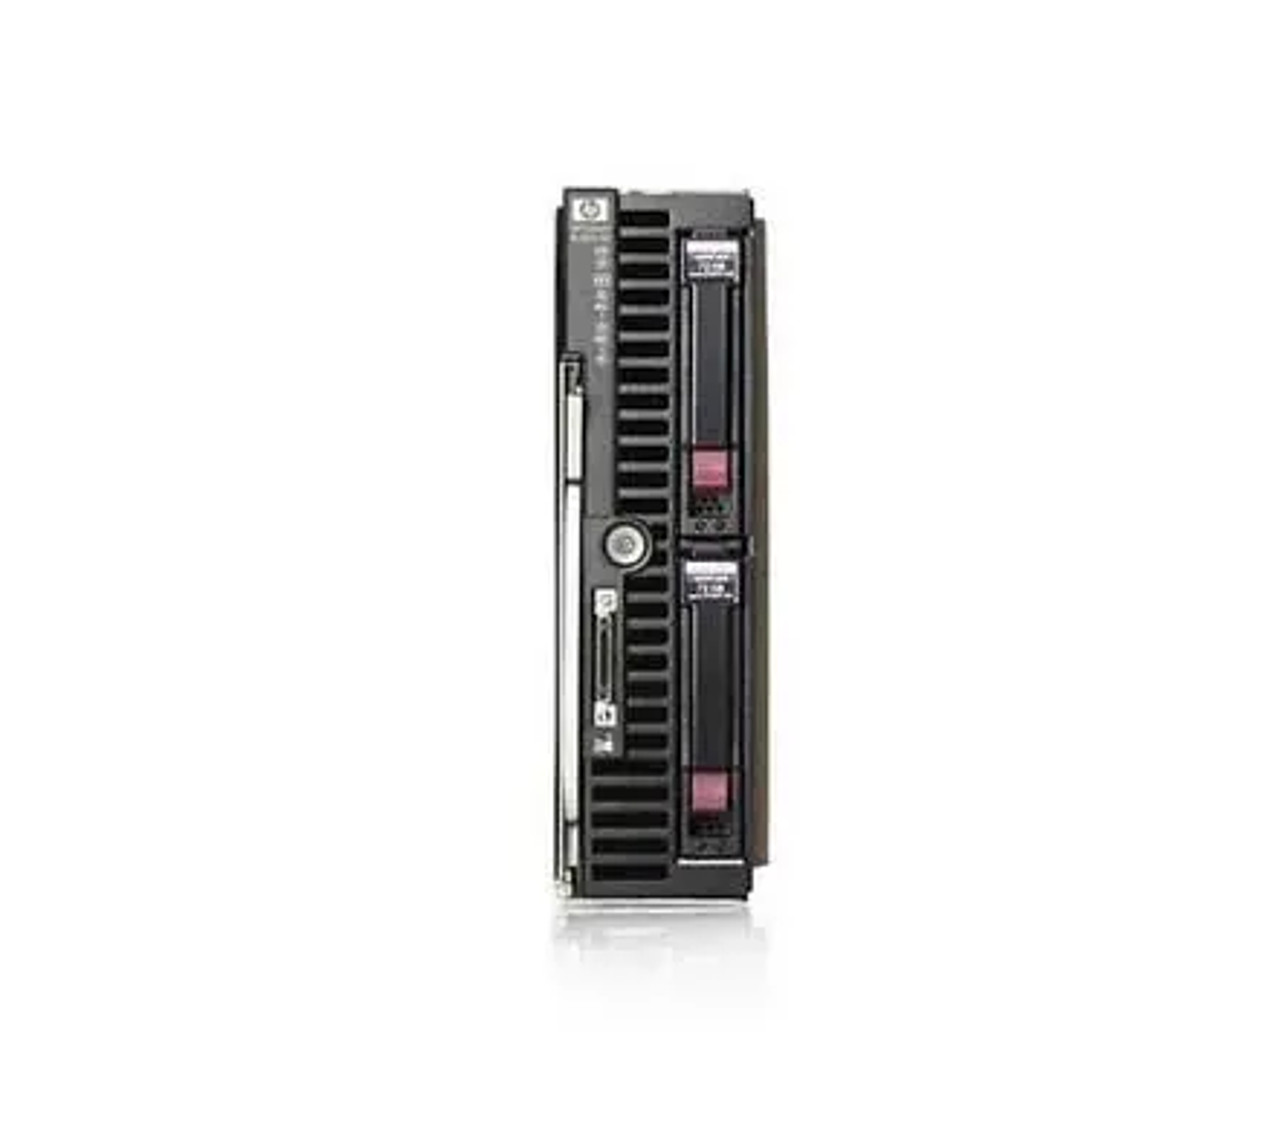 492310-B21 | HP | ProLiant BL460C G5 1x L5430 2.66GHz 2GB LP RAM Blade Server